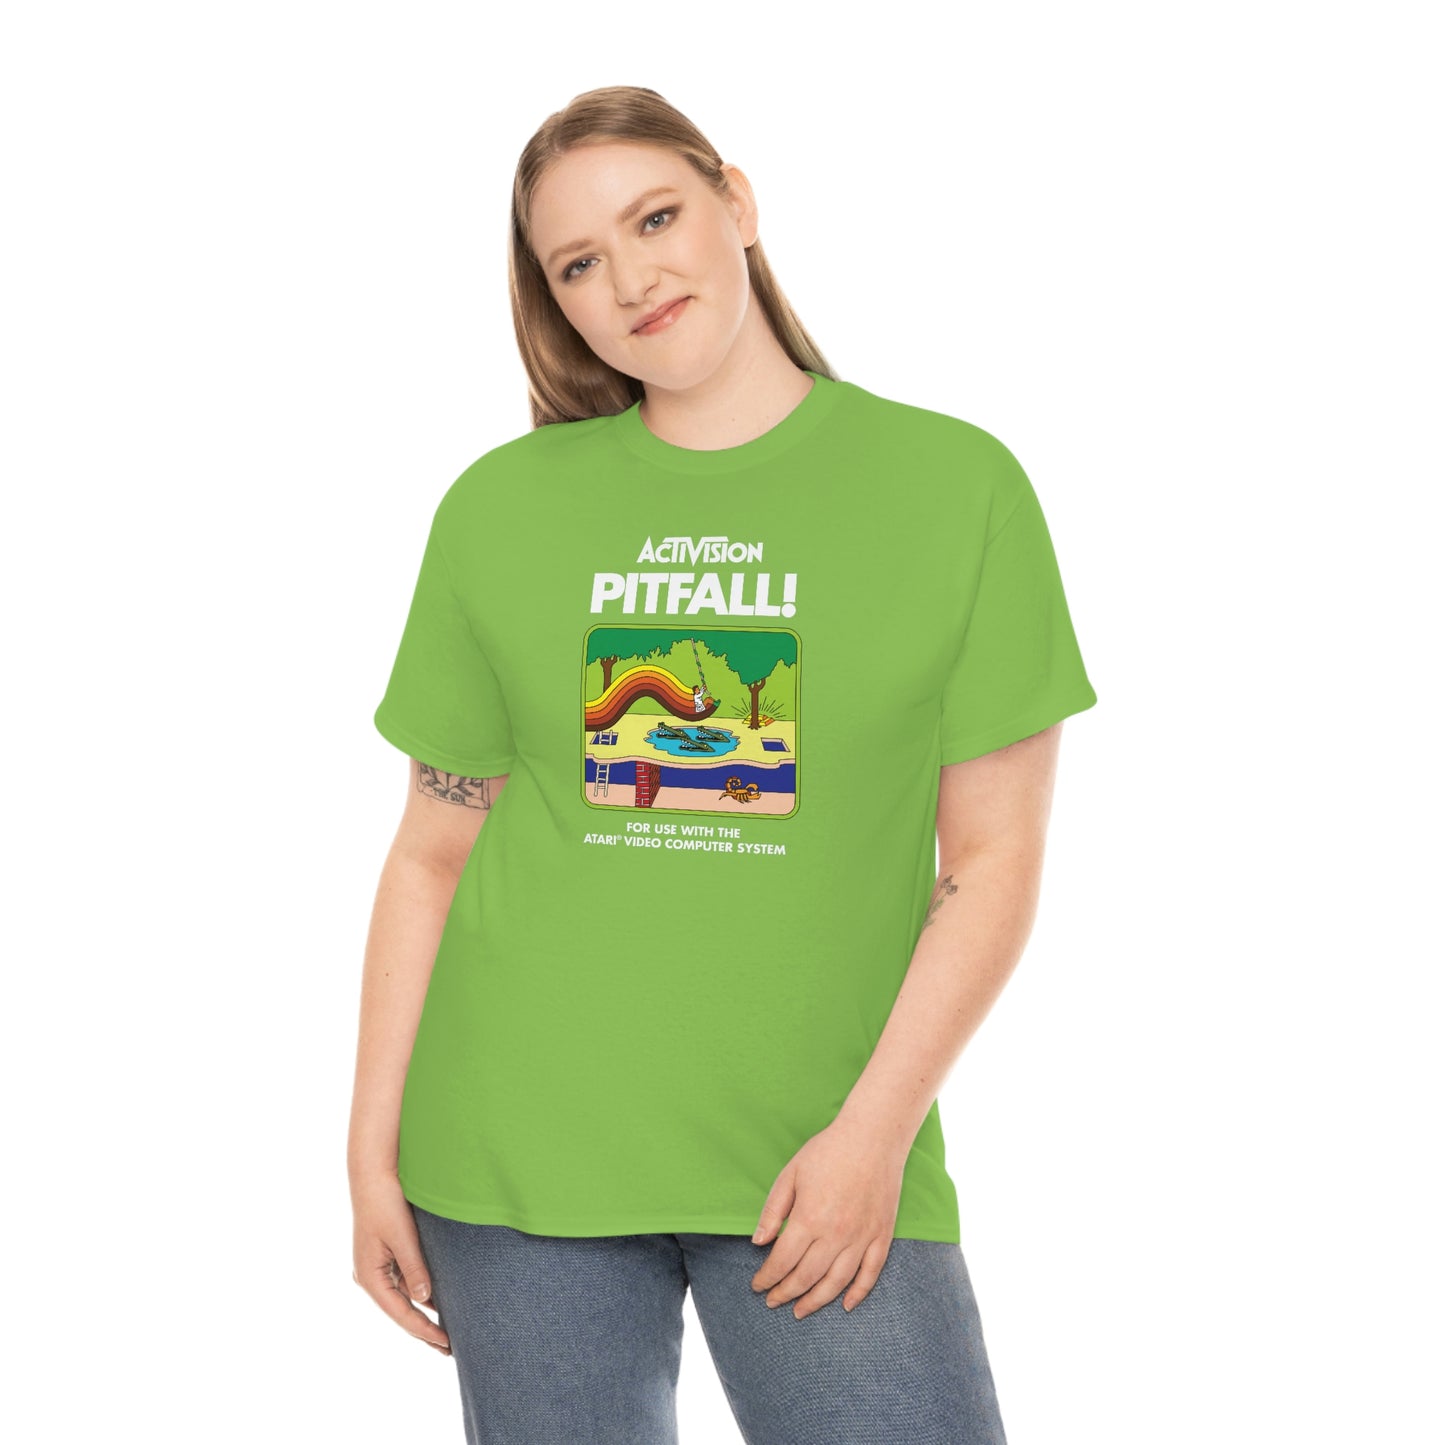 Activision Pitfall T-Shirt